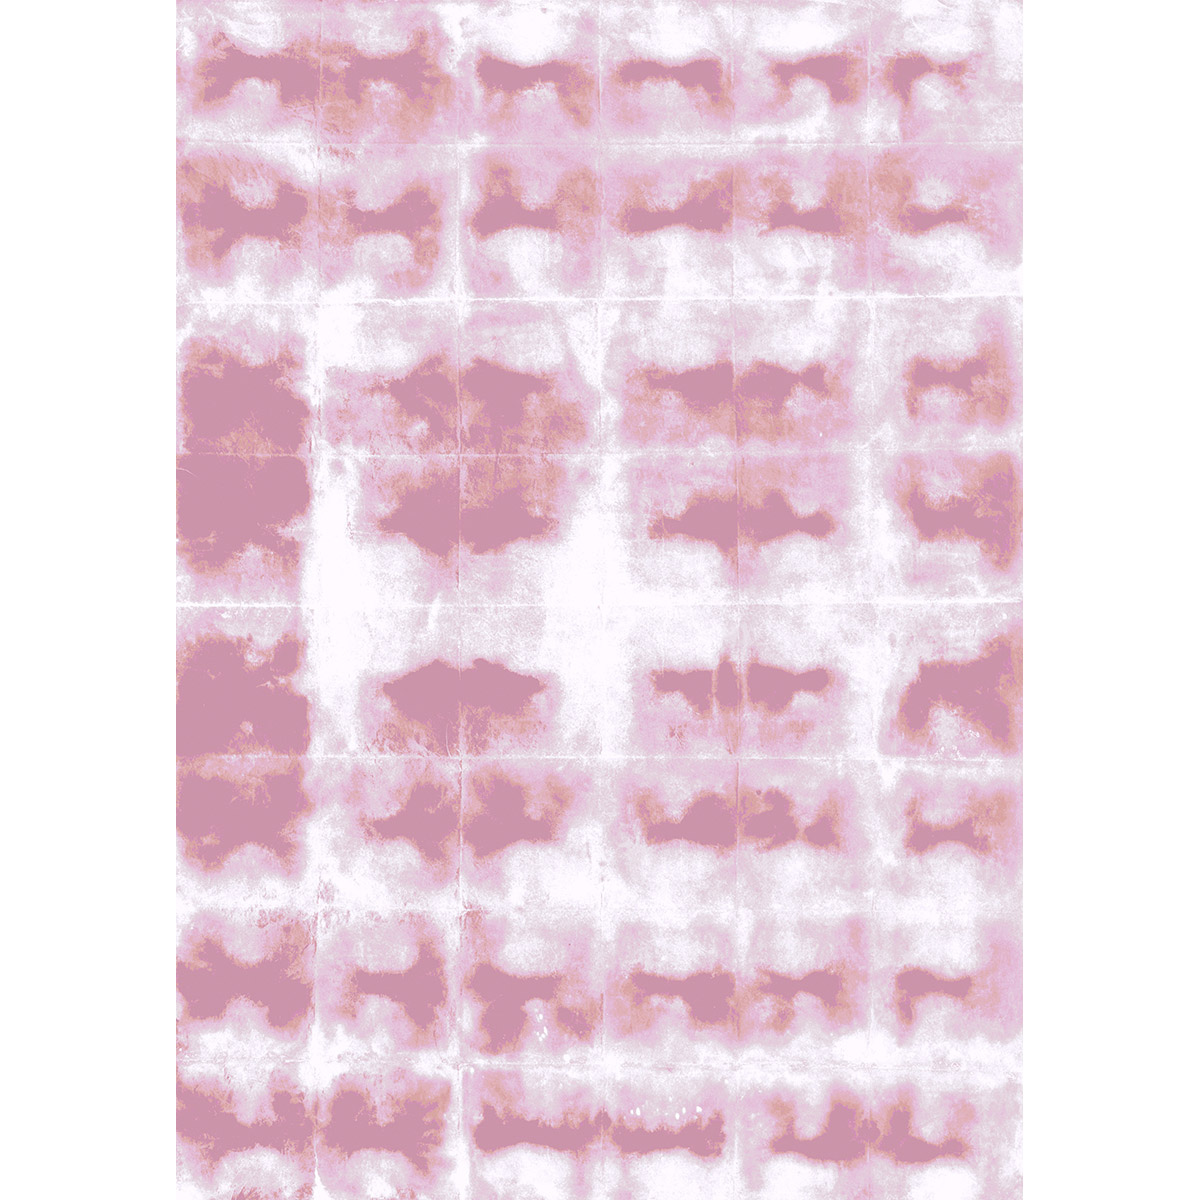 6A-Wabi-Rose-poudre-Feuille-Laur-Meyrieux-papierpeint-wallpaper-s